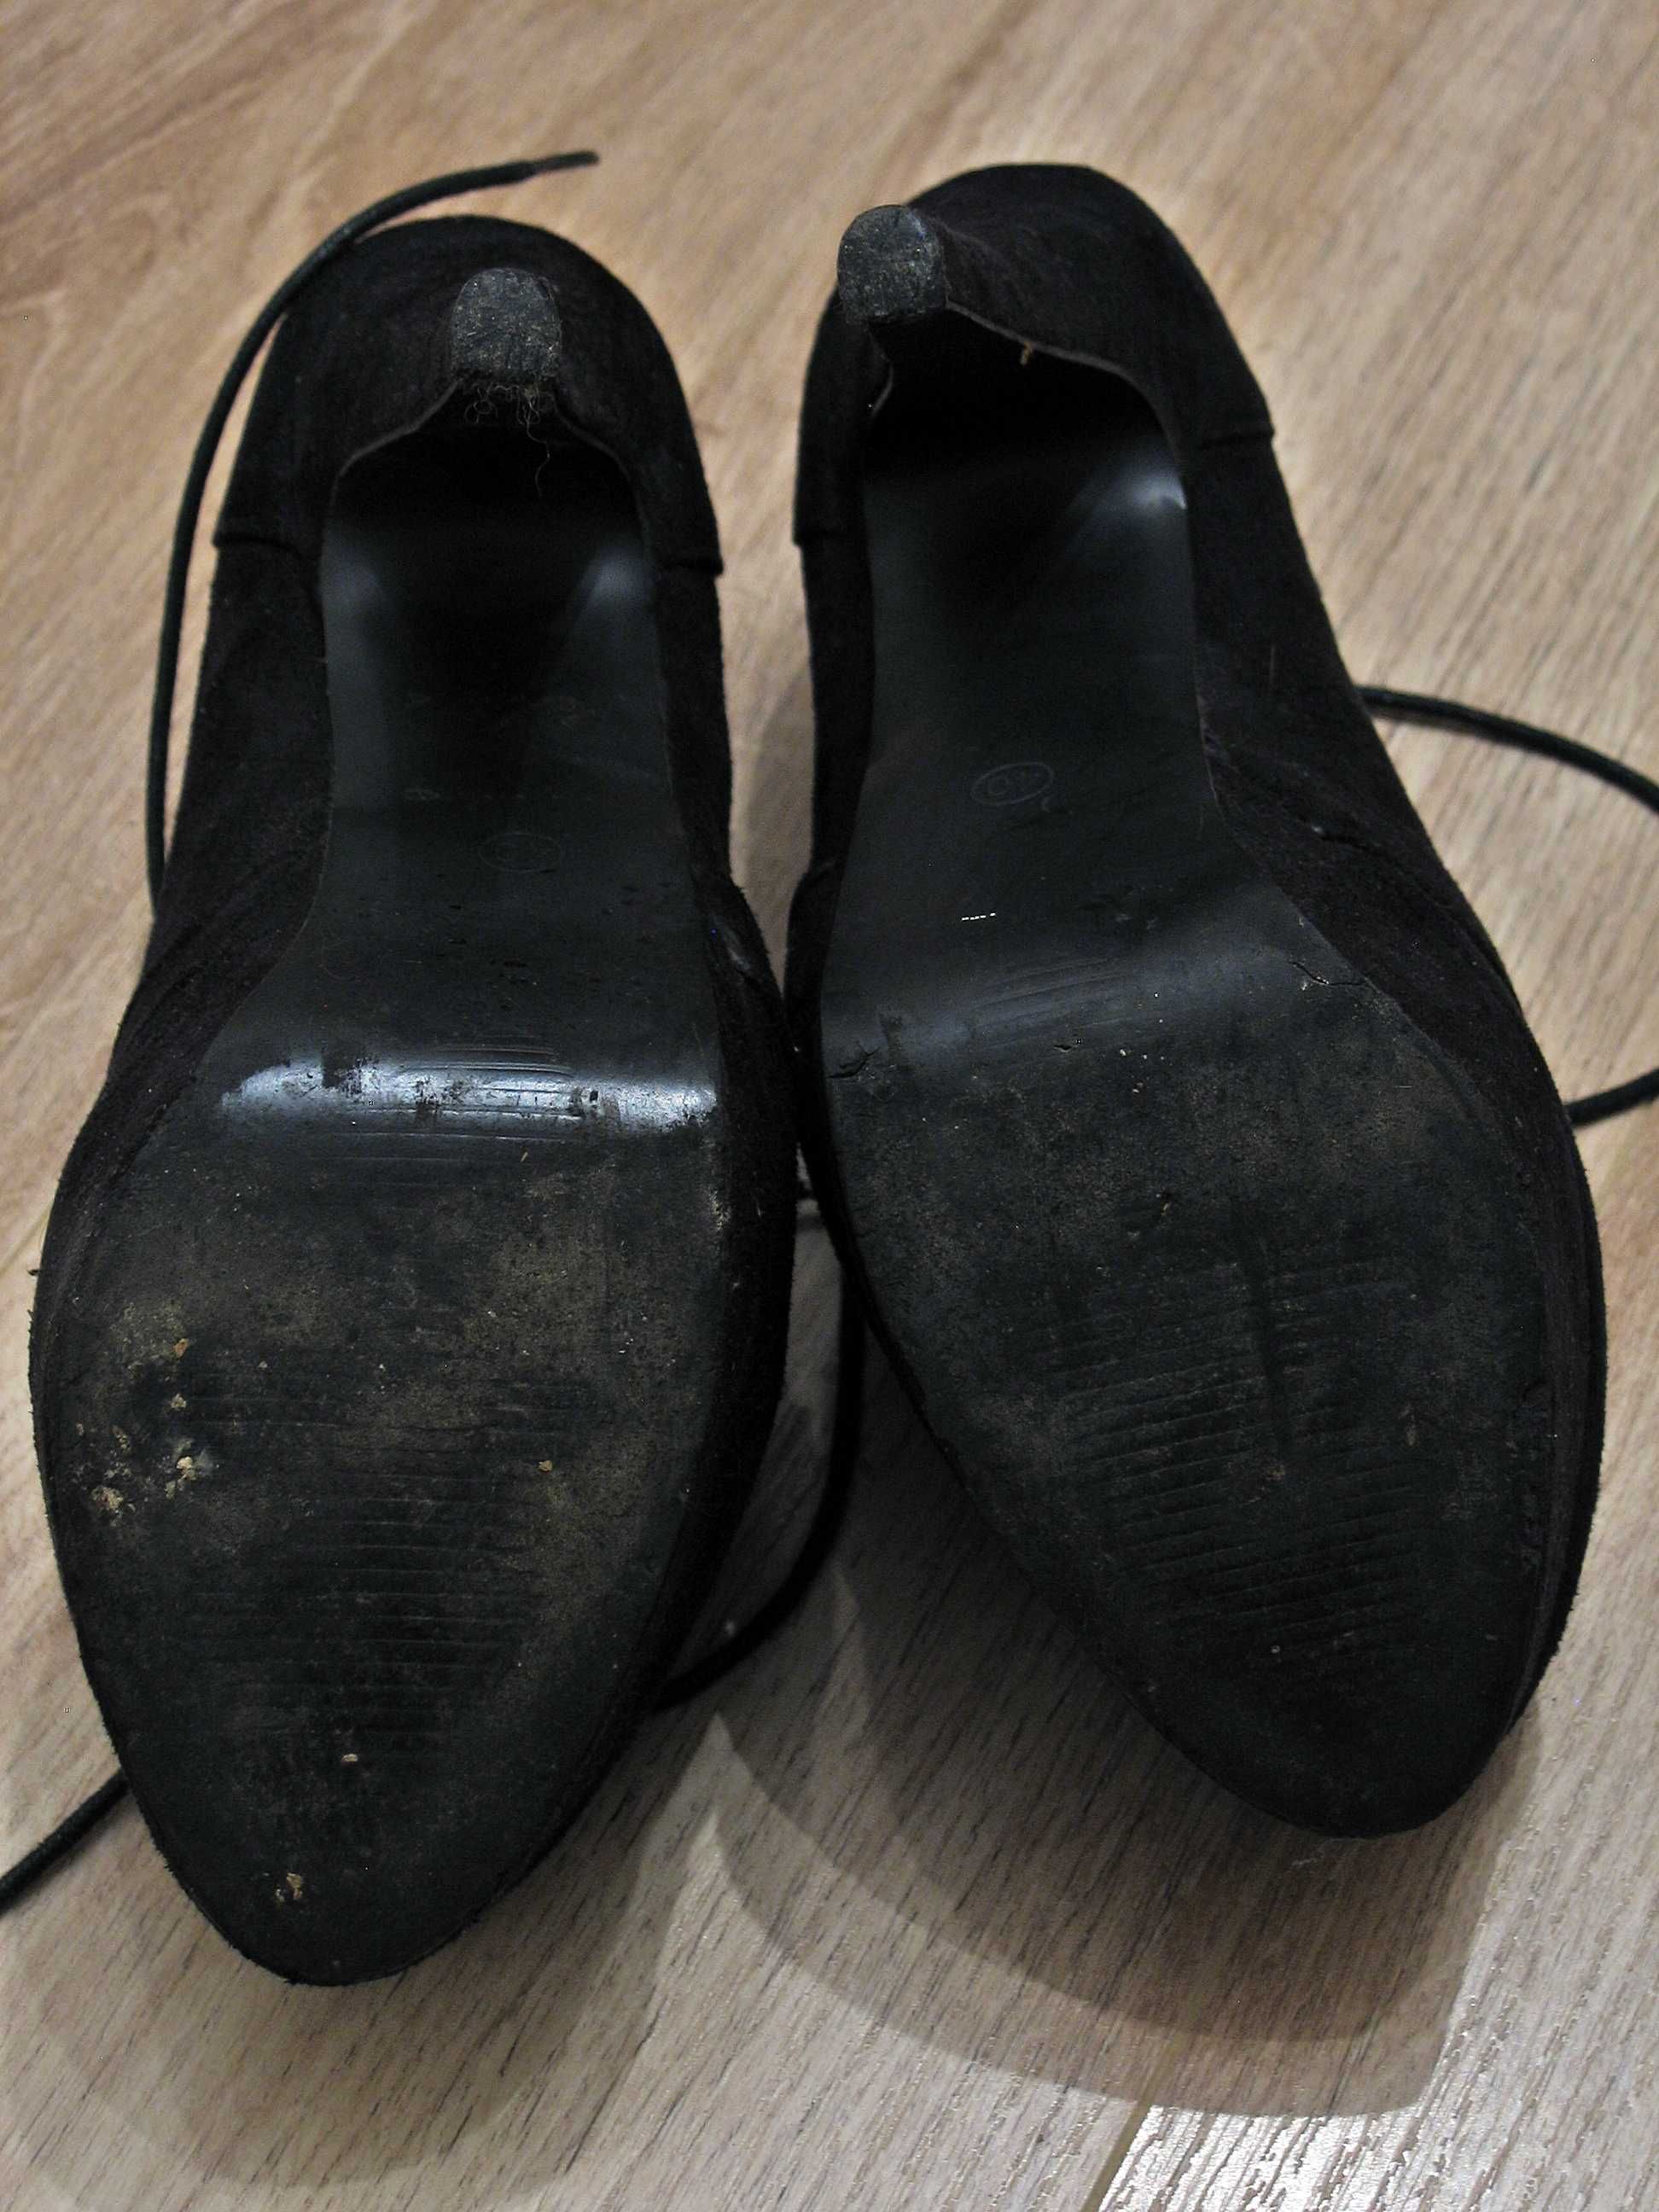 Czarne buty na platformie Jennika, rozmiar 40, nubuk, używane